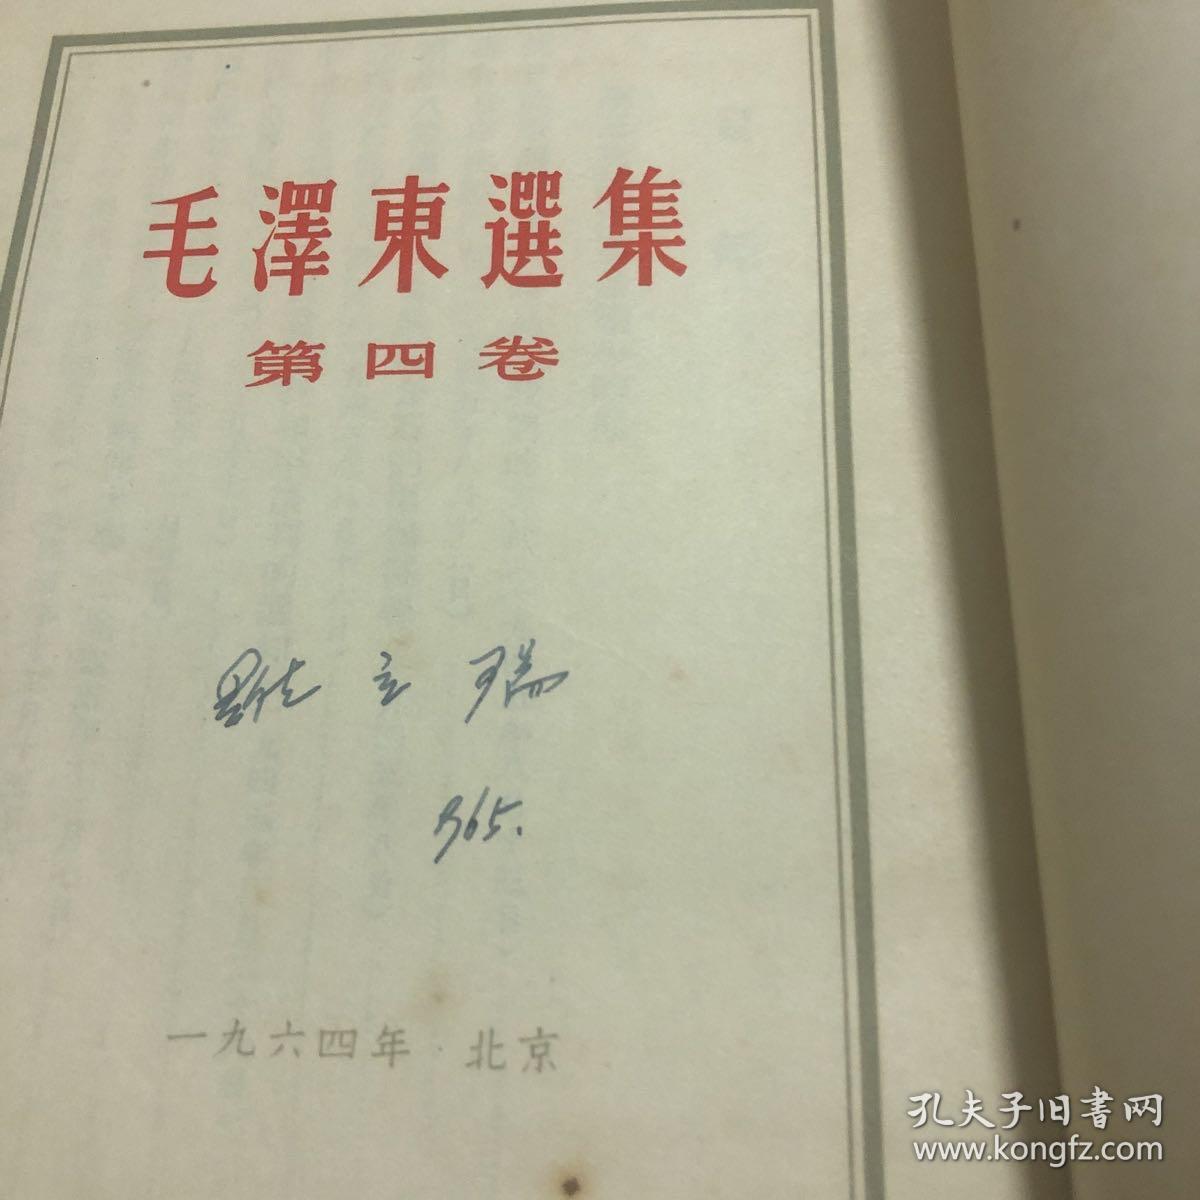 毛泽东选集第四卷 繁体竖版